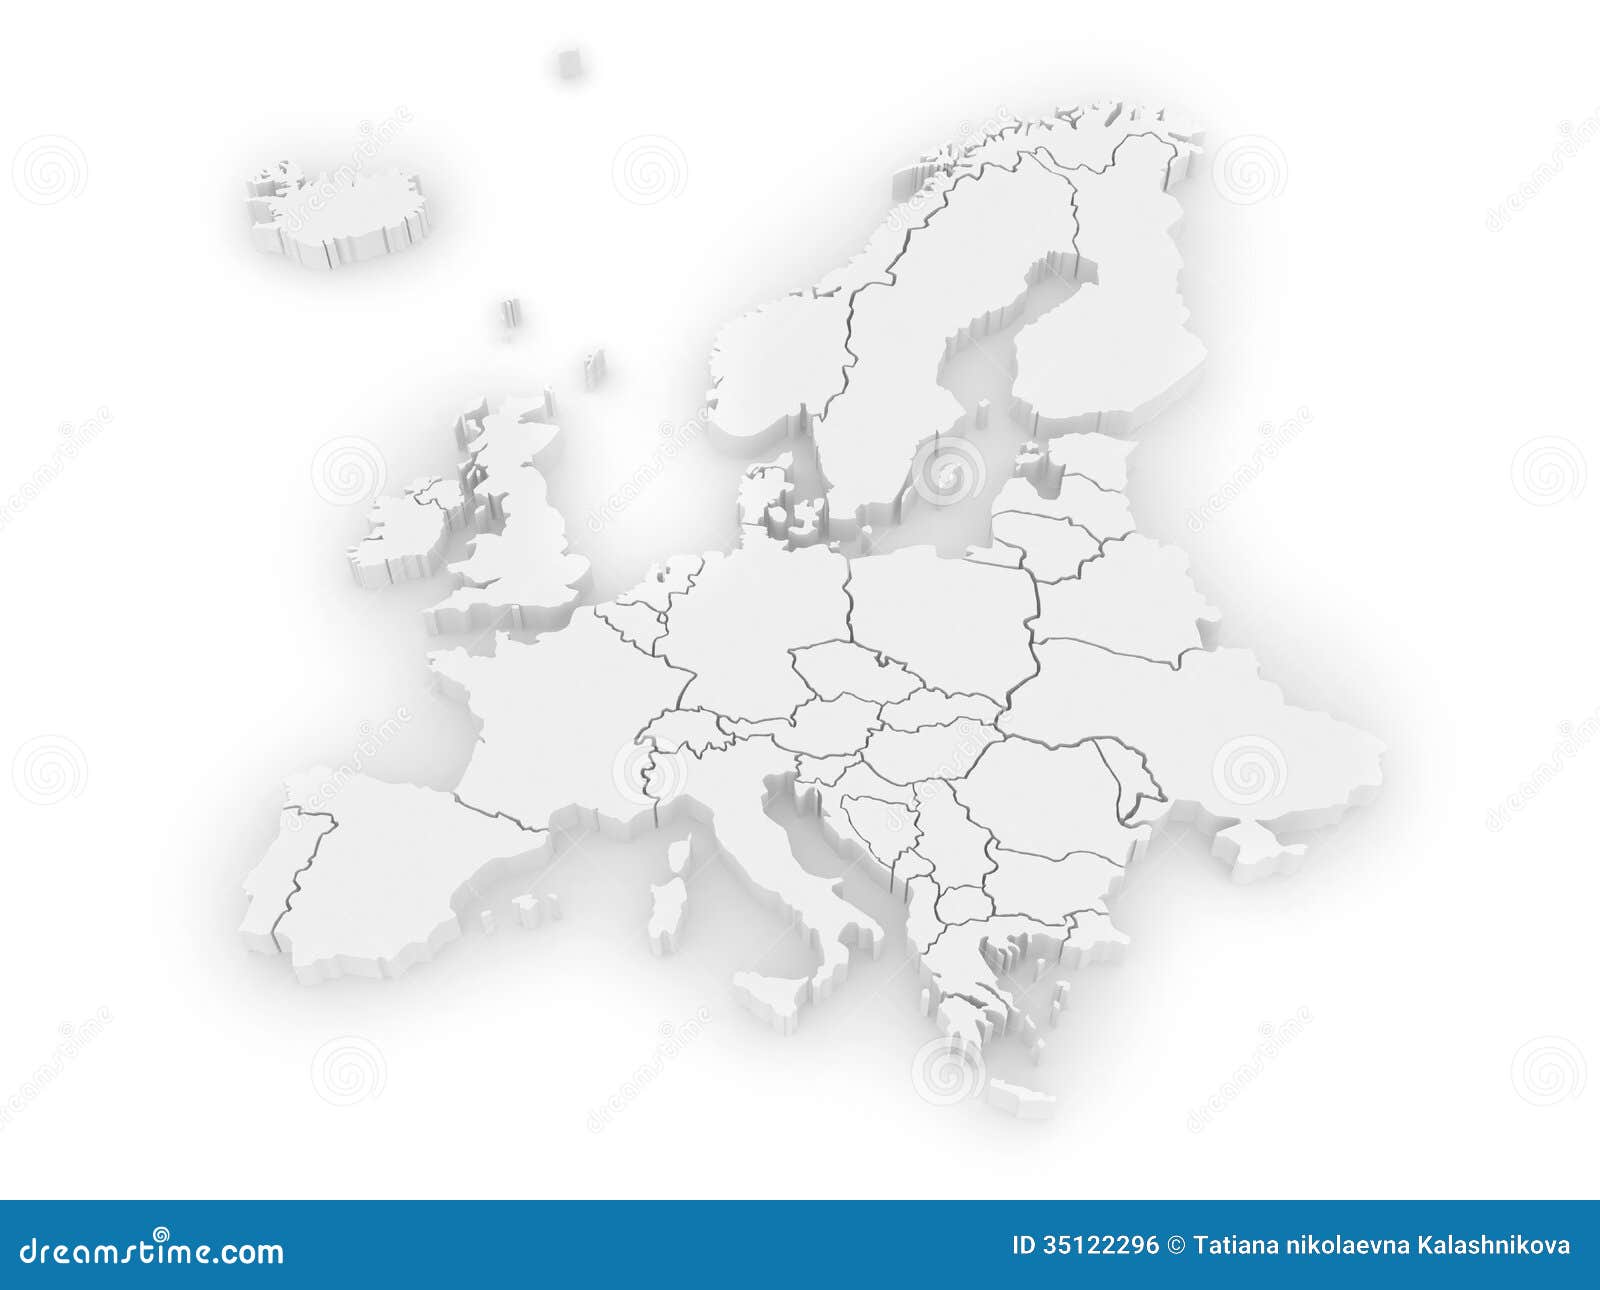 Georelief Carte relief 3D géographique de l'Europe